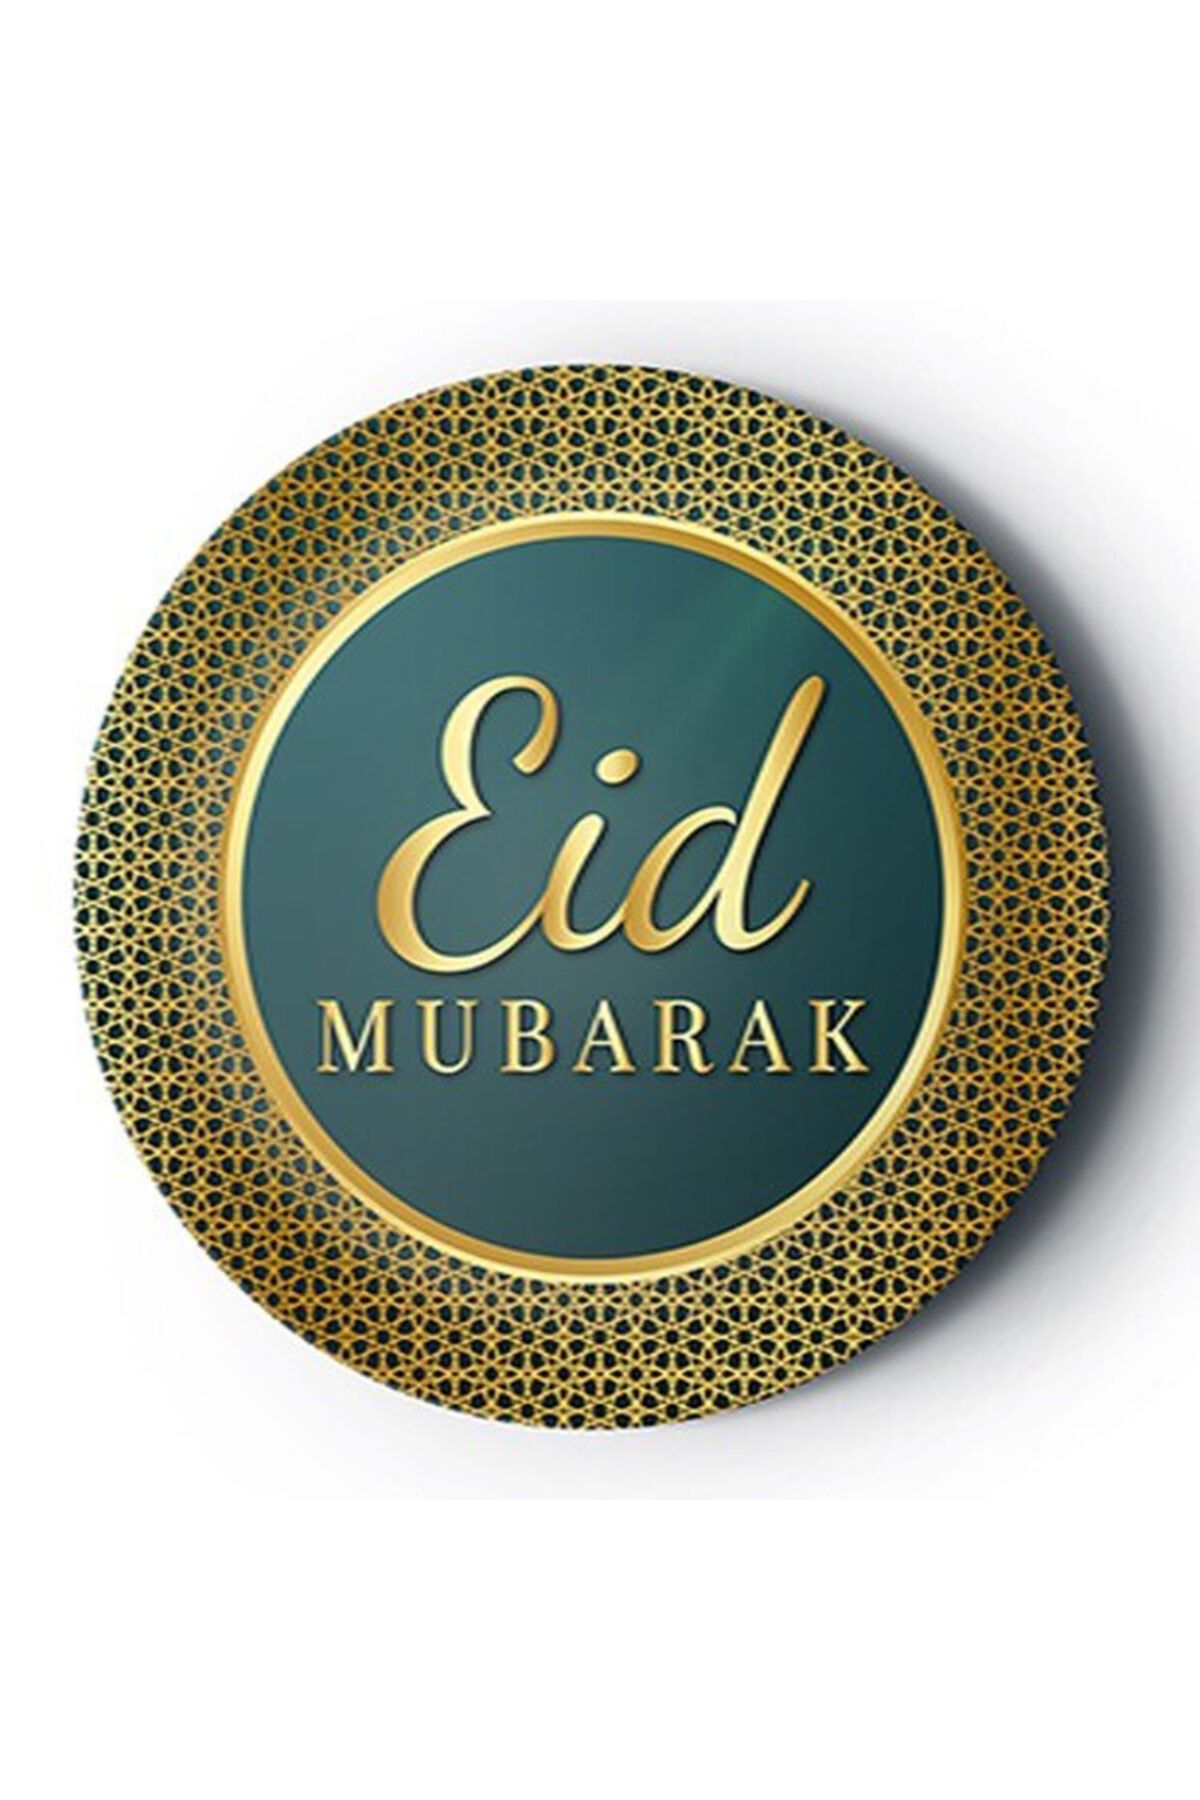 Huzur Party Store 8li Ramazan Bayramı Karton Tabak 22 Cm Dayanıklı Eid Mubarak Temalı Muslim Festival Dini Islami Süsü